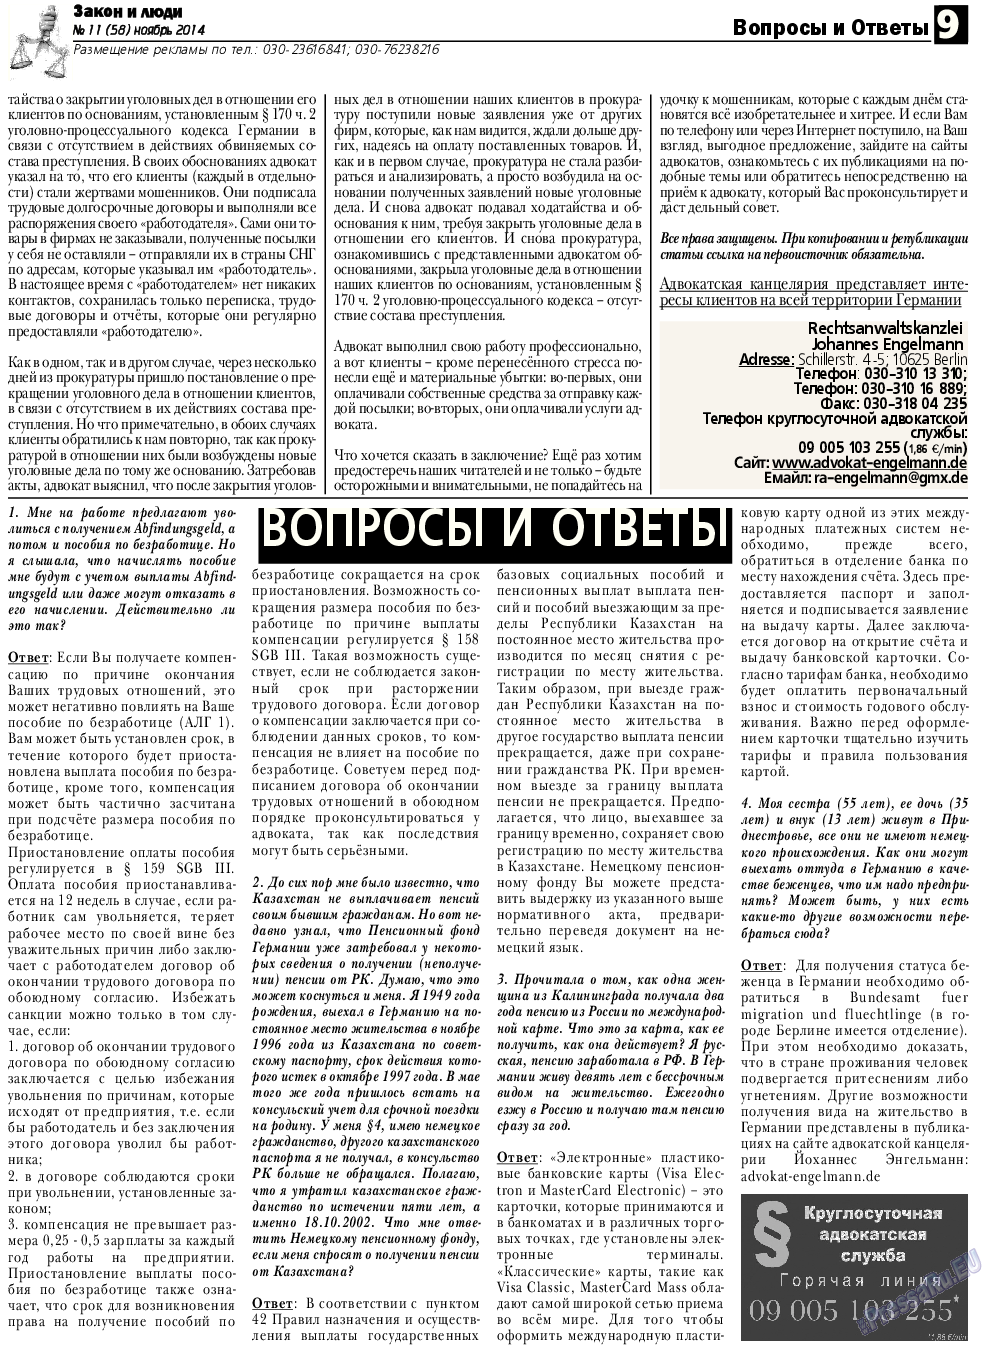 Закон и люди, газета. 2014 №11 стр.9